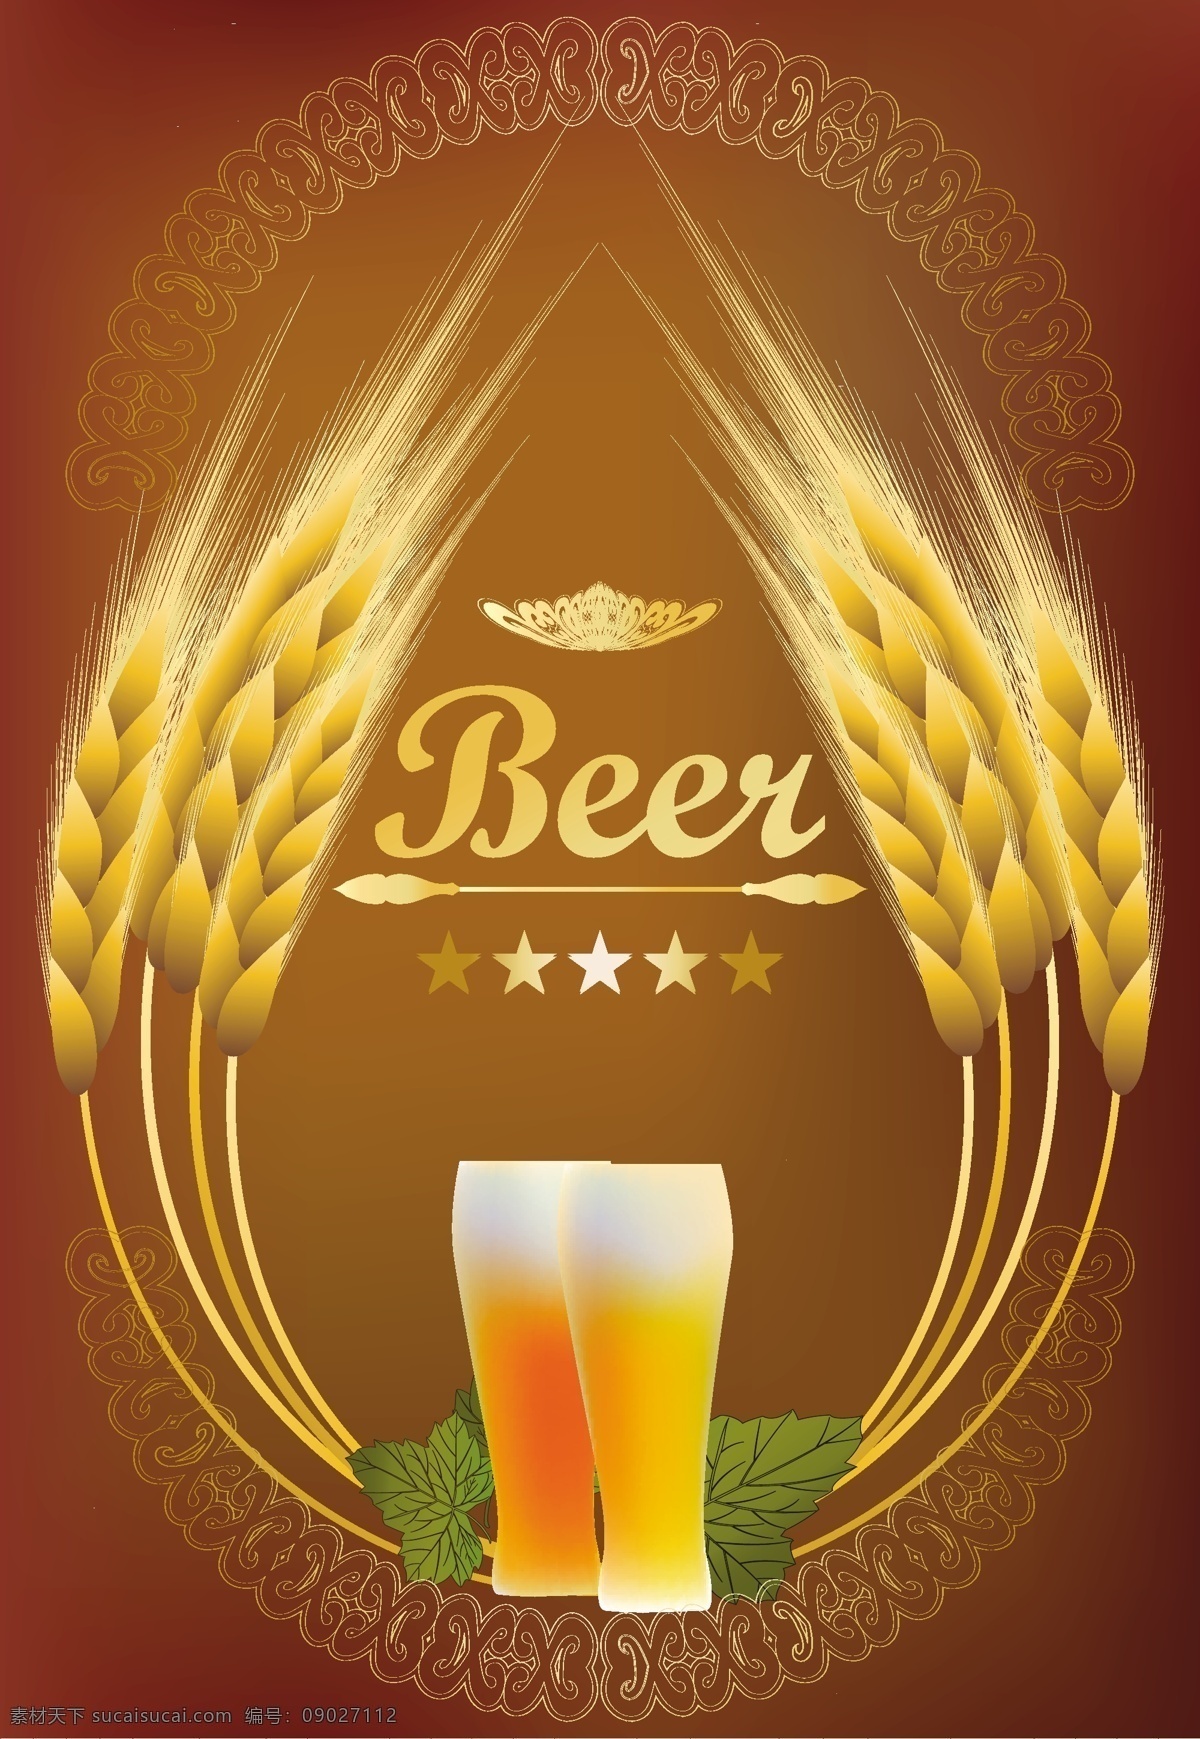 麦穗啤酒背景 麦穗 啤酒背景 啤酒 饮料 酒水 标志图标 矢量素材 红色